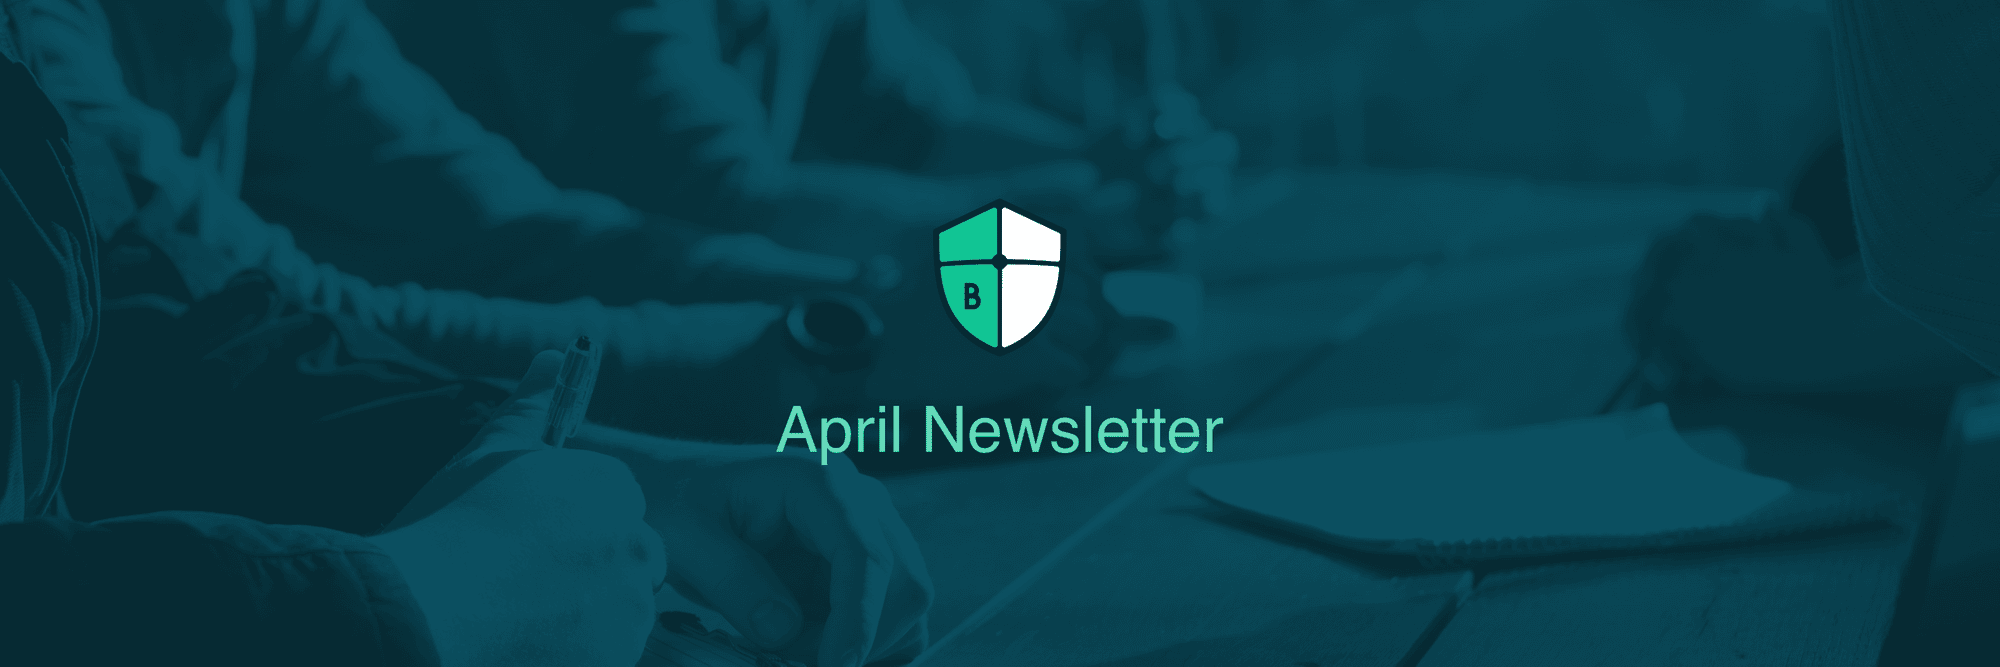 April Newsletter Header Image